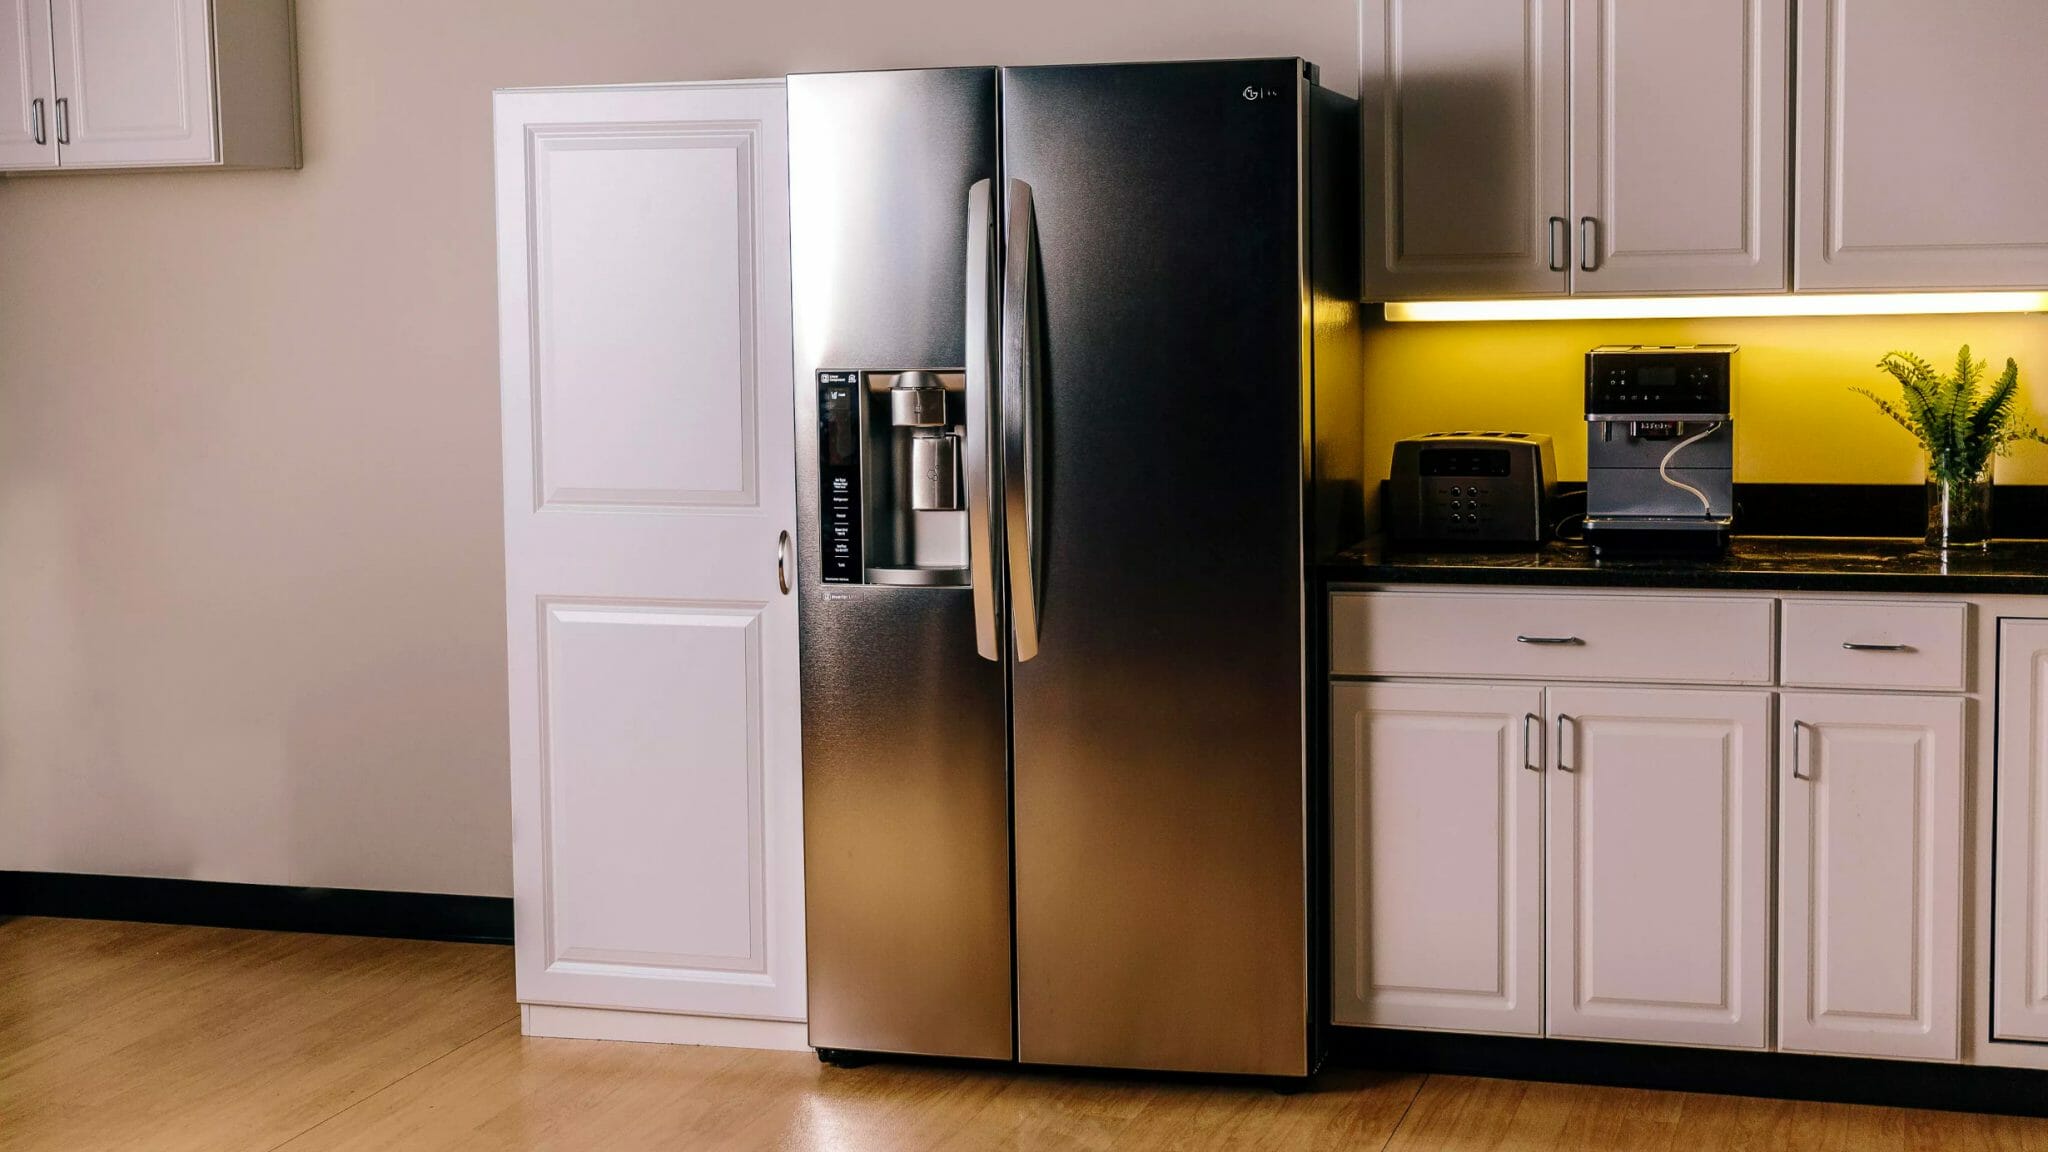 Какие холодильники лучше по качеству. Холодильник (Side-by-Side) Smeg fq60cpo. LG холодильник 2021. Холодильник ЛГ Сайд бай Сайд.